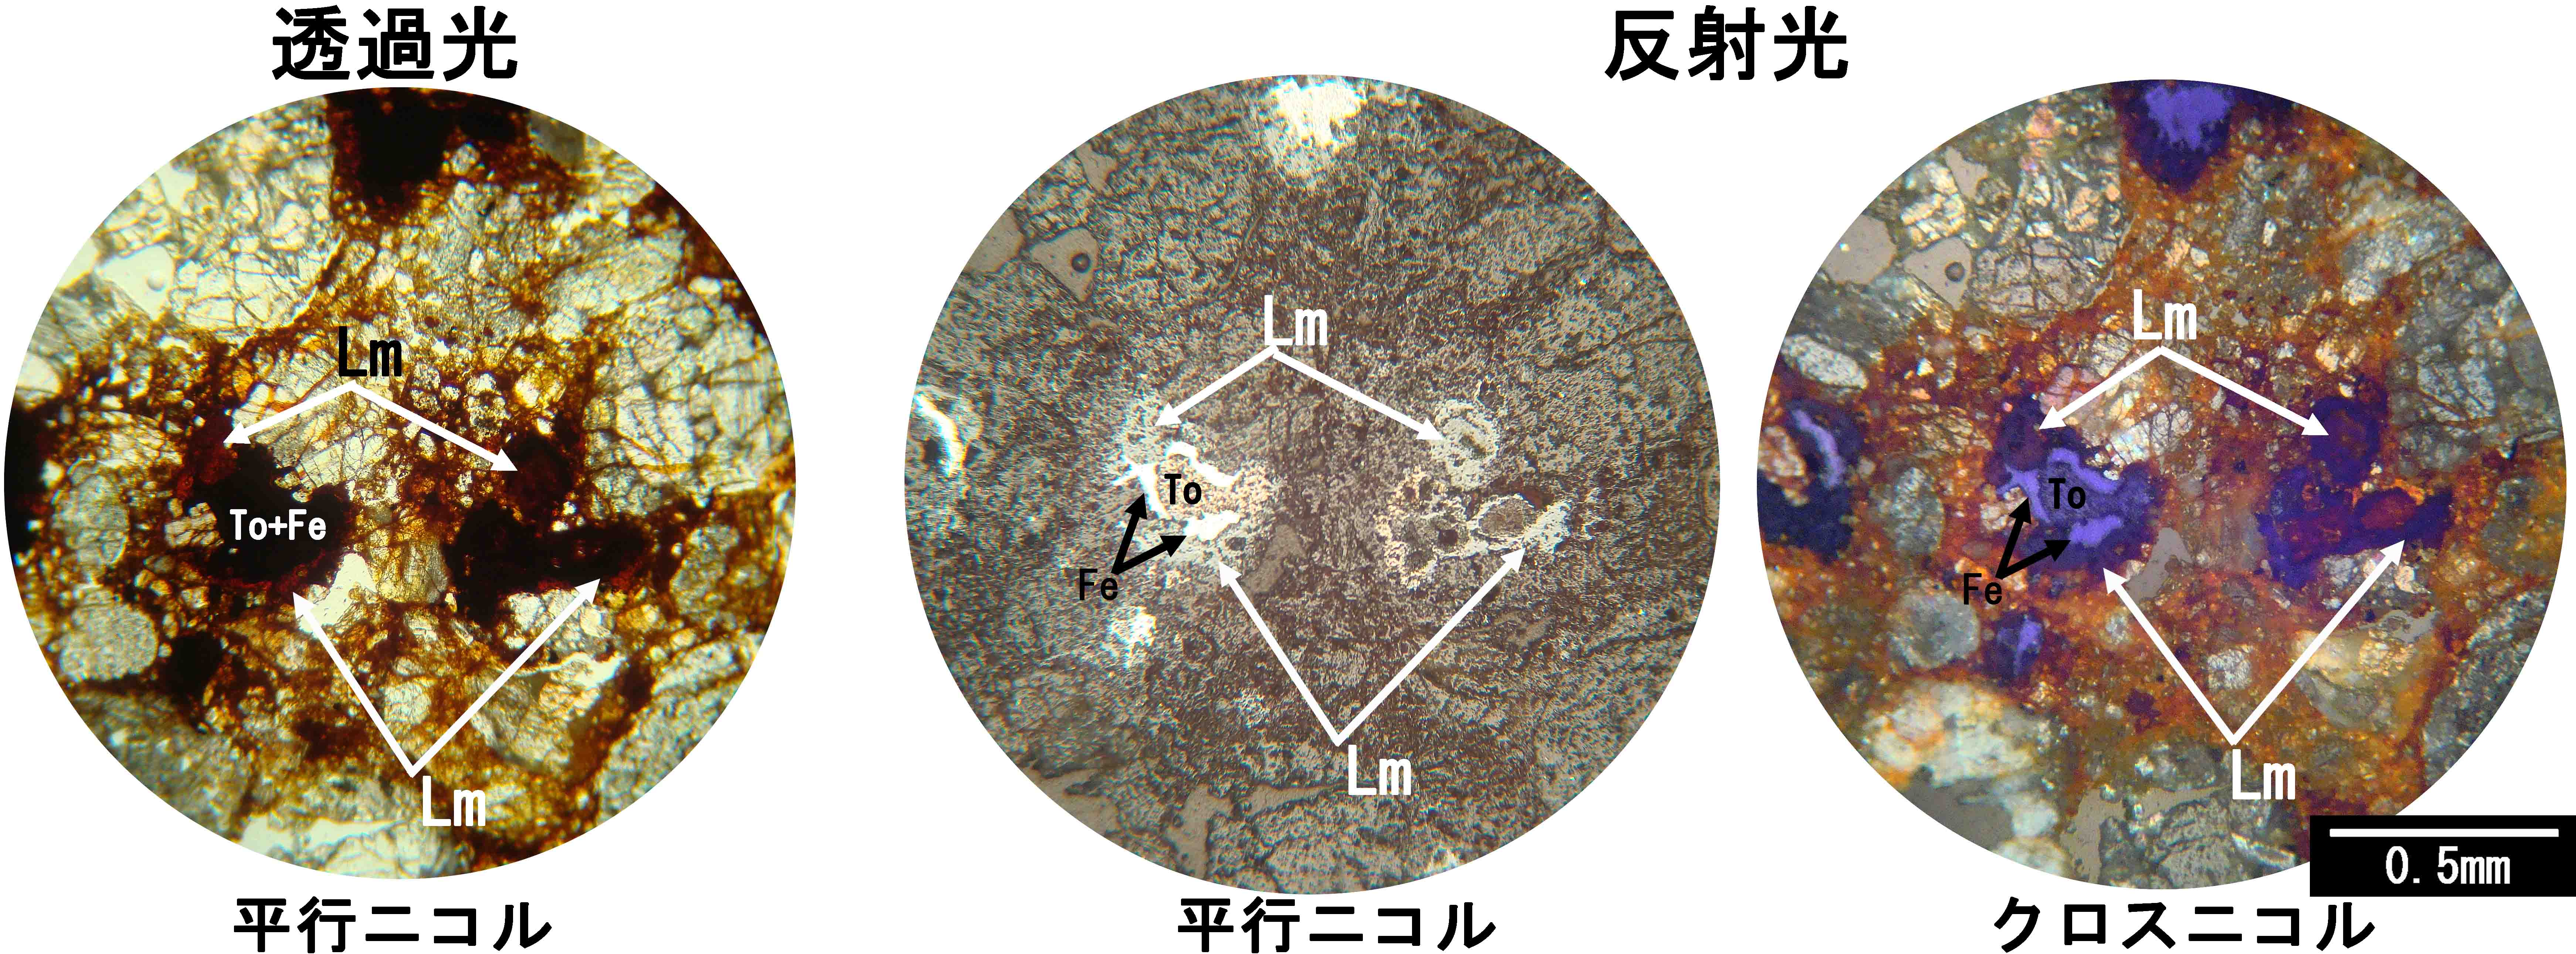 褐鉄鉱 limonite